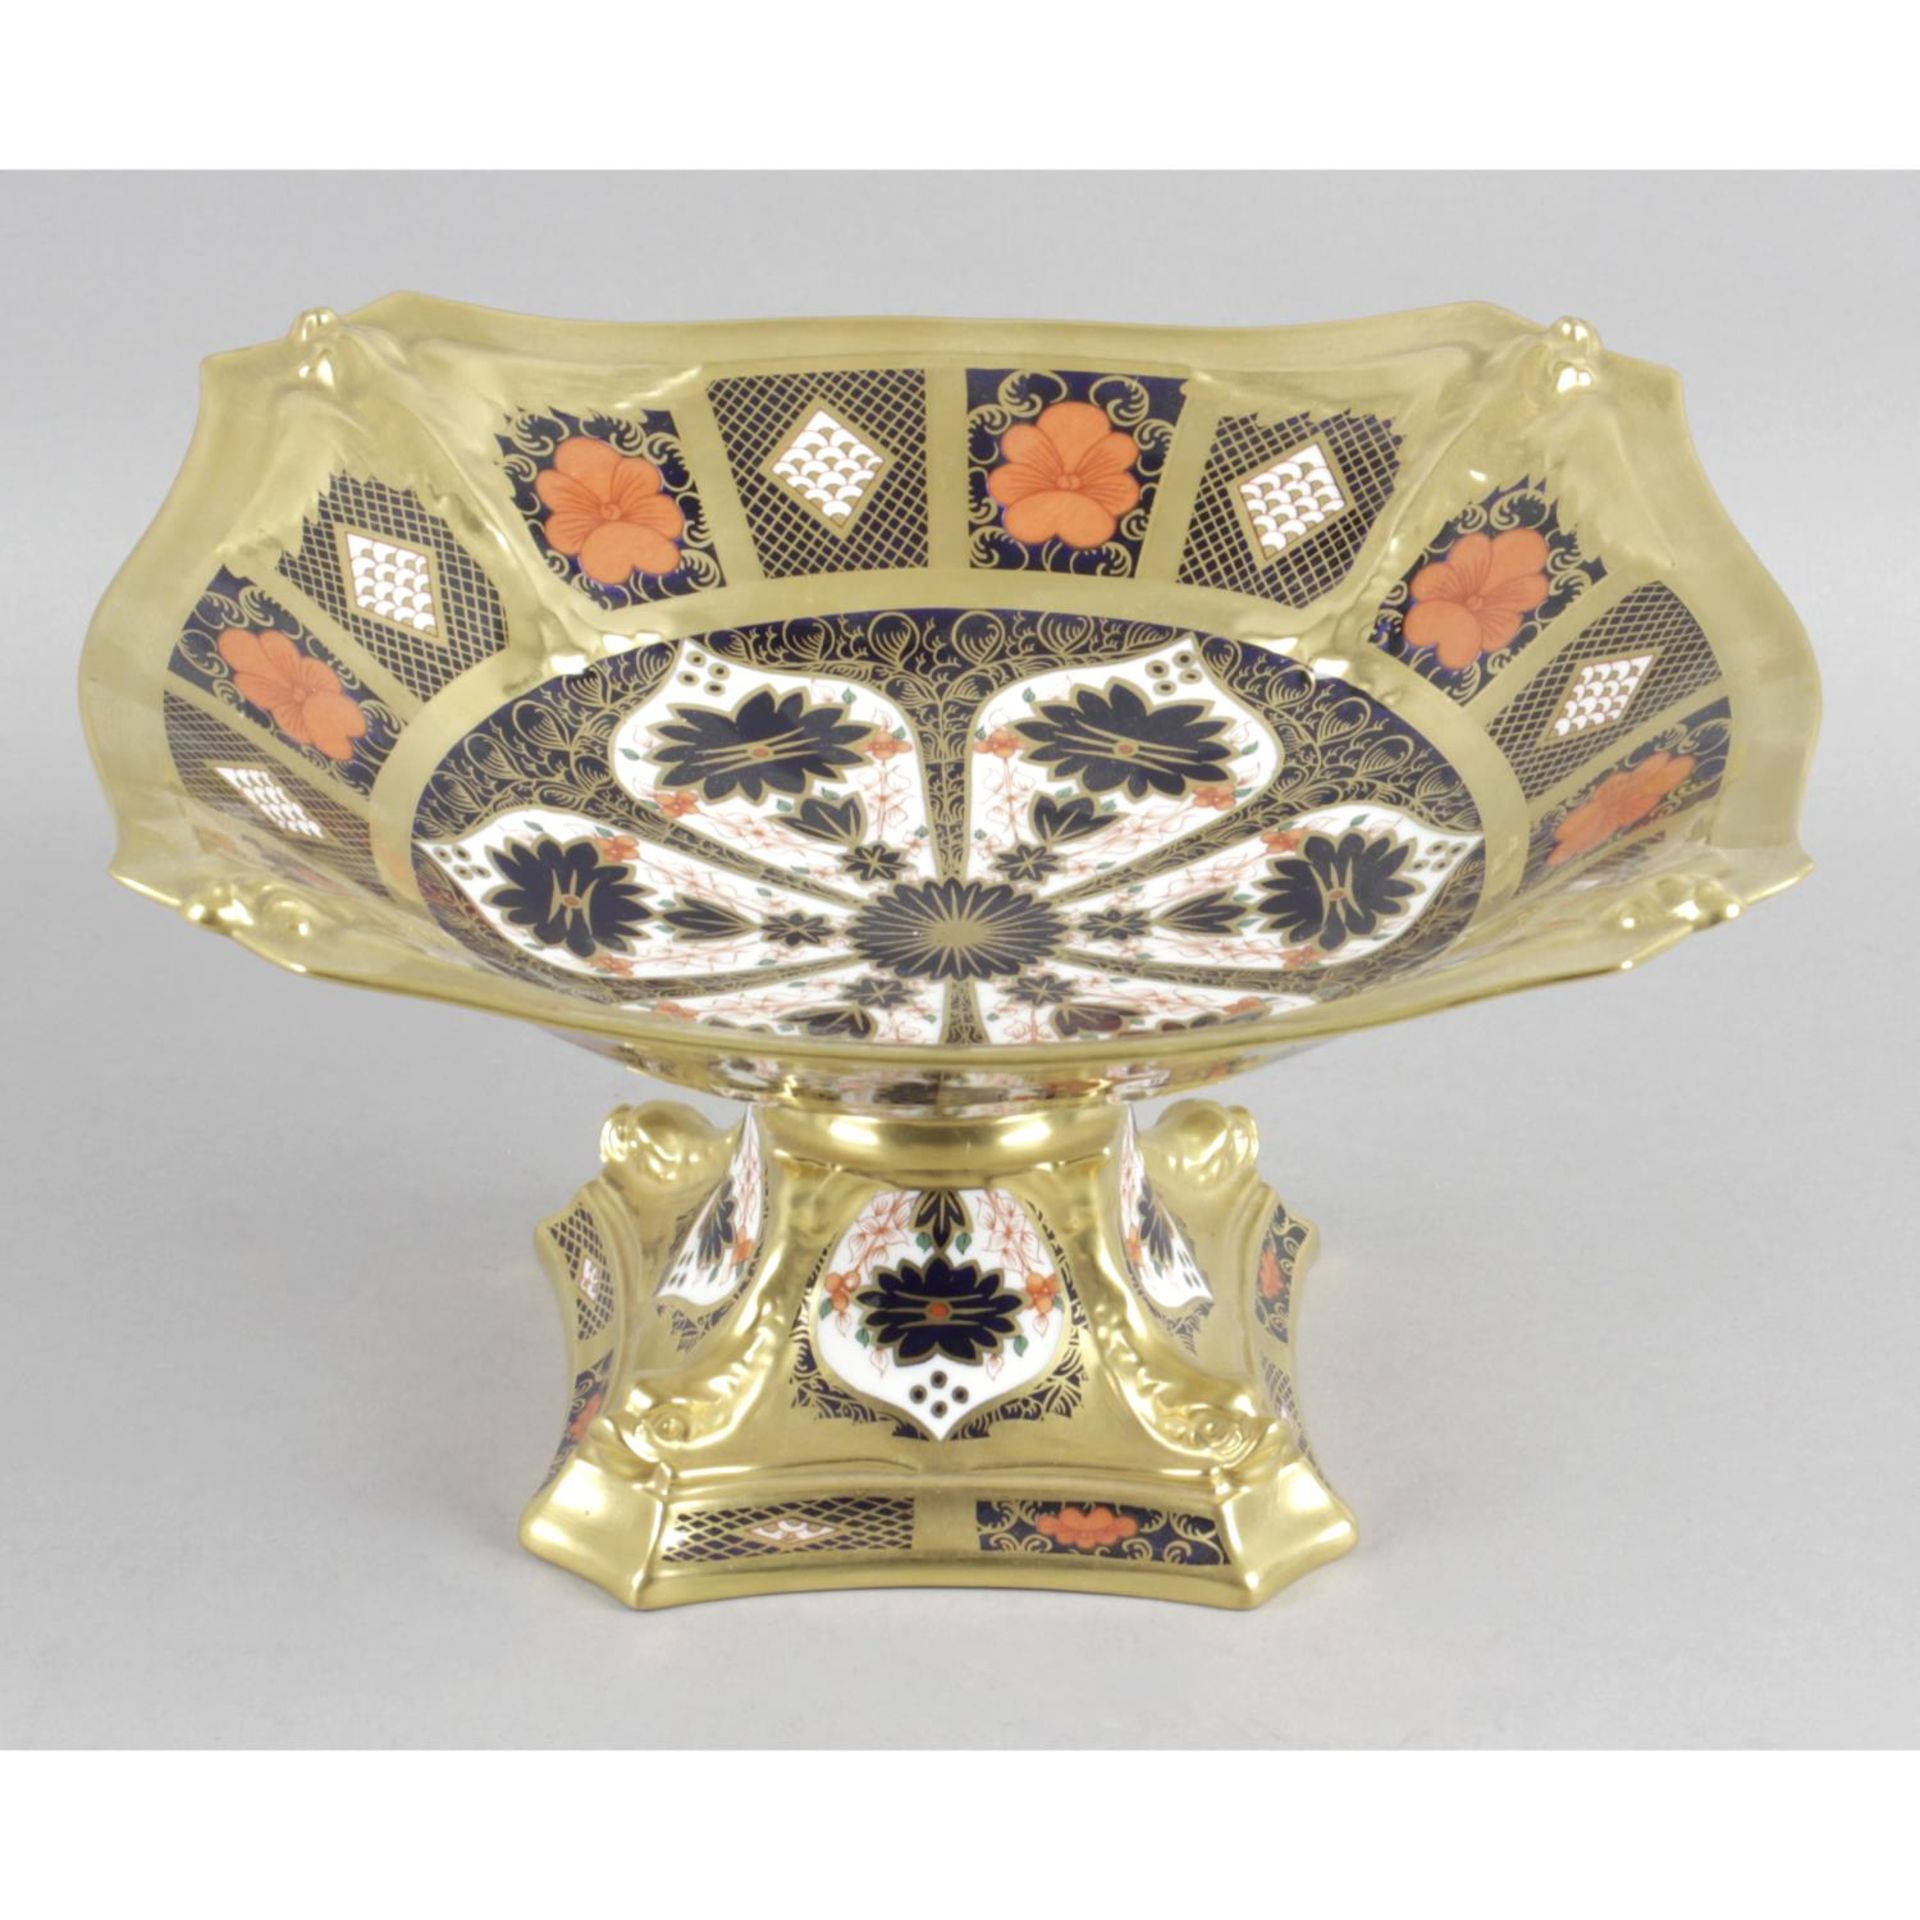 A good Royal Crown Derby porcelain Imari pattern pedestal dish,